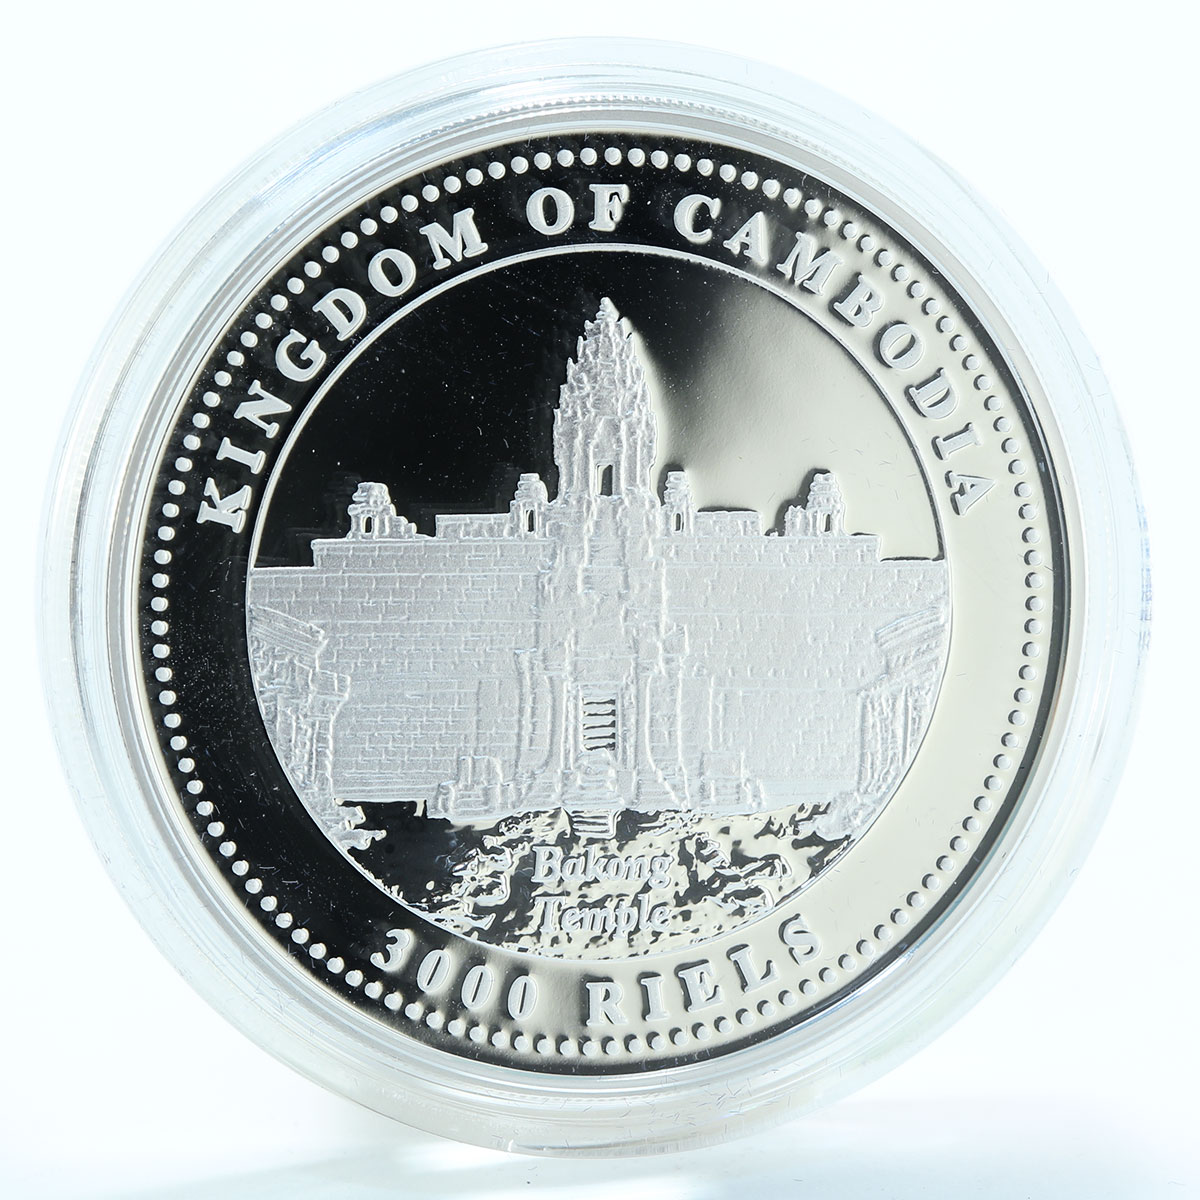 Cambodia 3000 riels Lunar Year Series Year Pig silver coin 2007